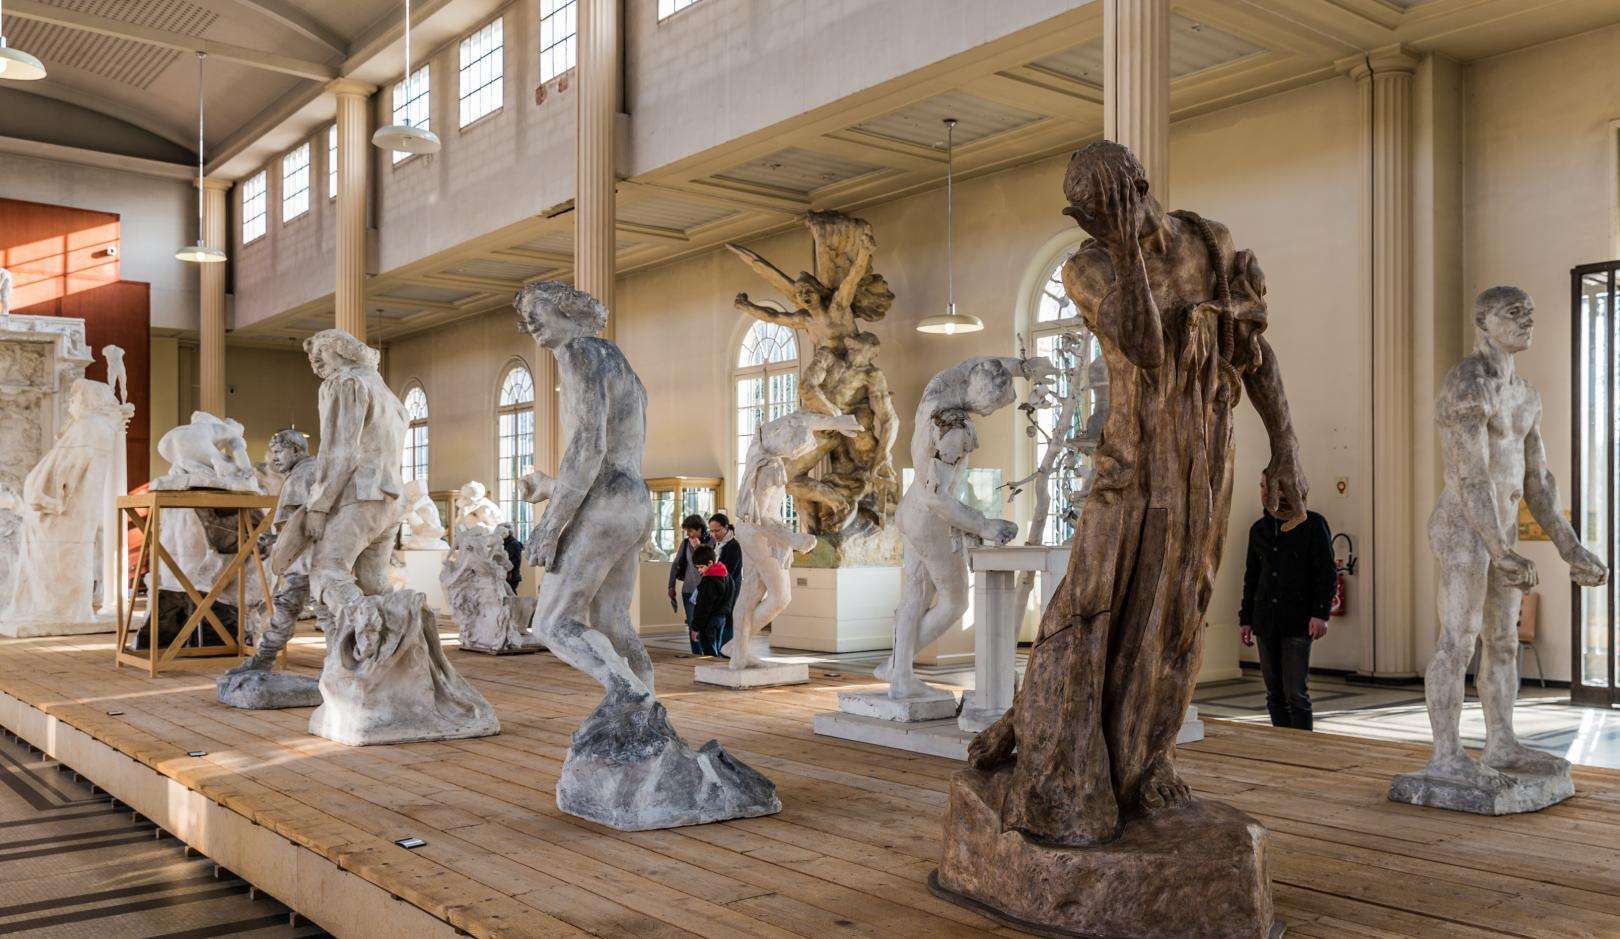 L'enchantement toujours renouvelé du Musée Rodin